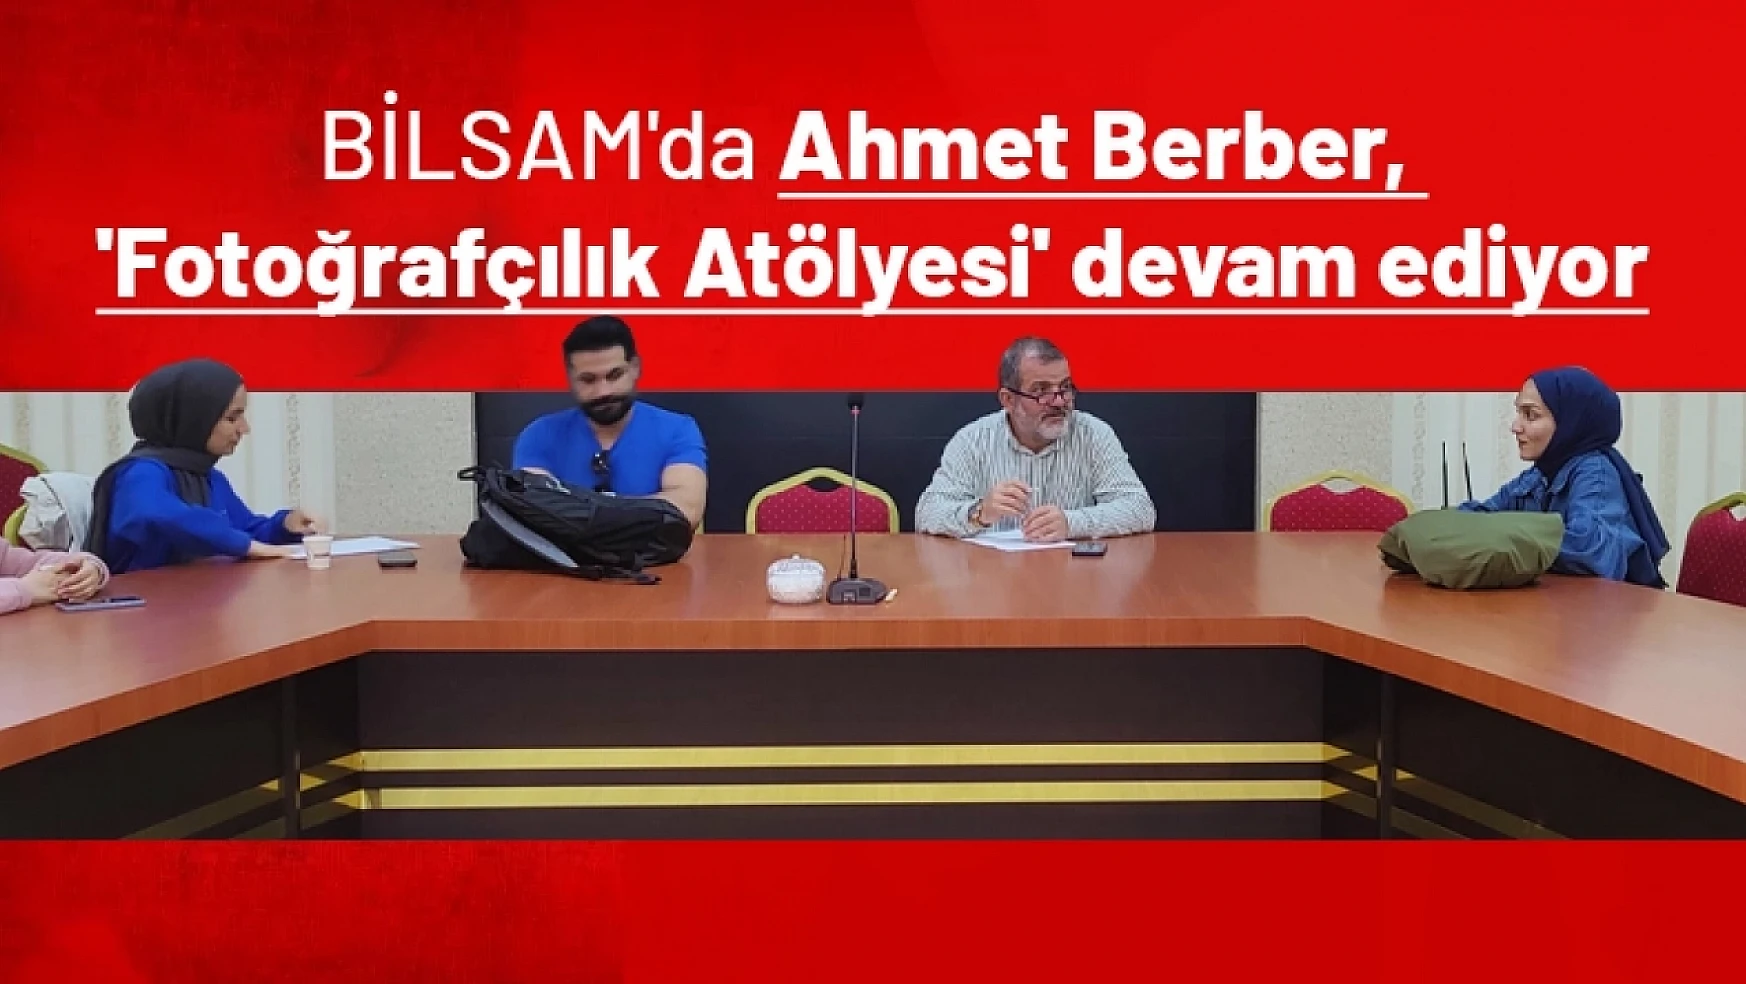 BİLSAM'da Ahmet Berber, 'Fotoğrafçılık Atölyesi' devam ediyor...